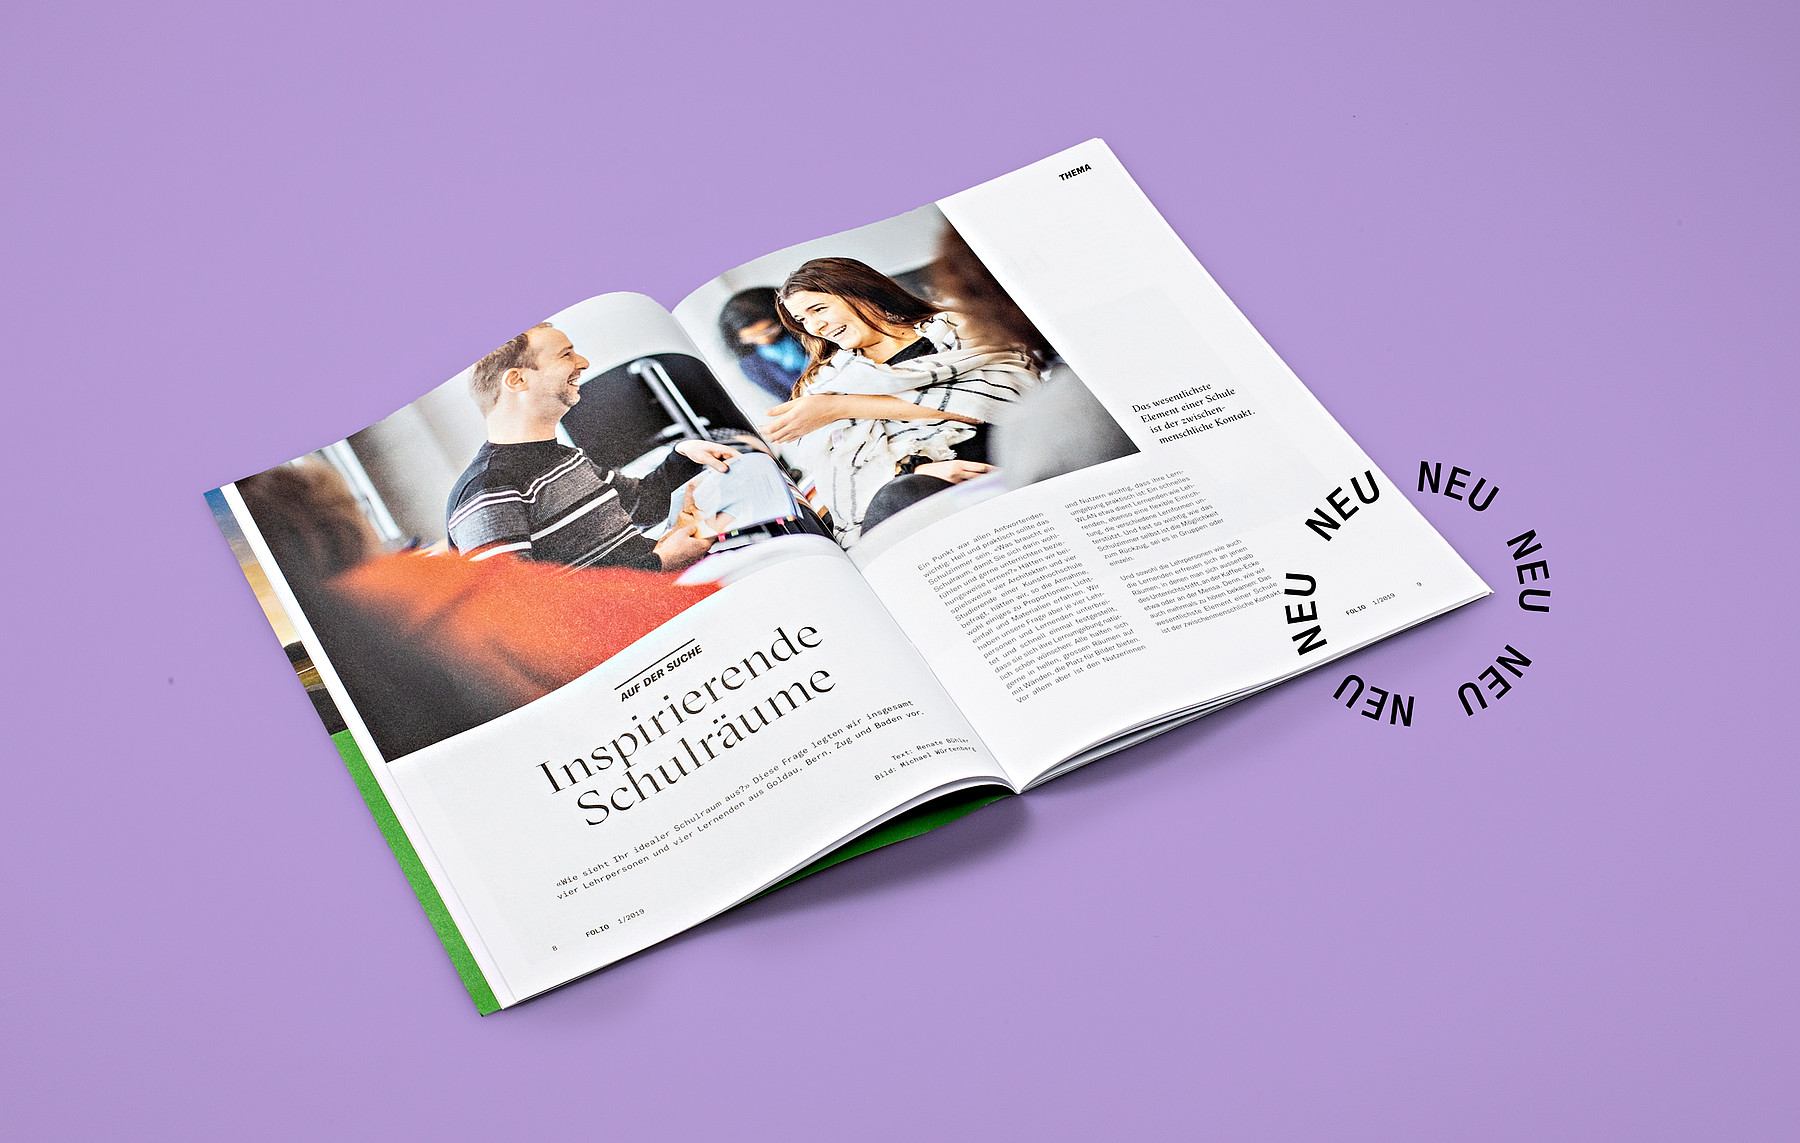 Ein Blick in das neu gestaltete Magazin «Folio» des Verbands Berufsbildung Schweiz zeigt einen Artikel zum Thema «Inspirierende Schulräume»